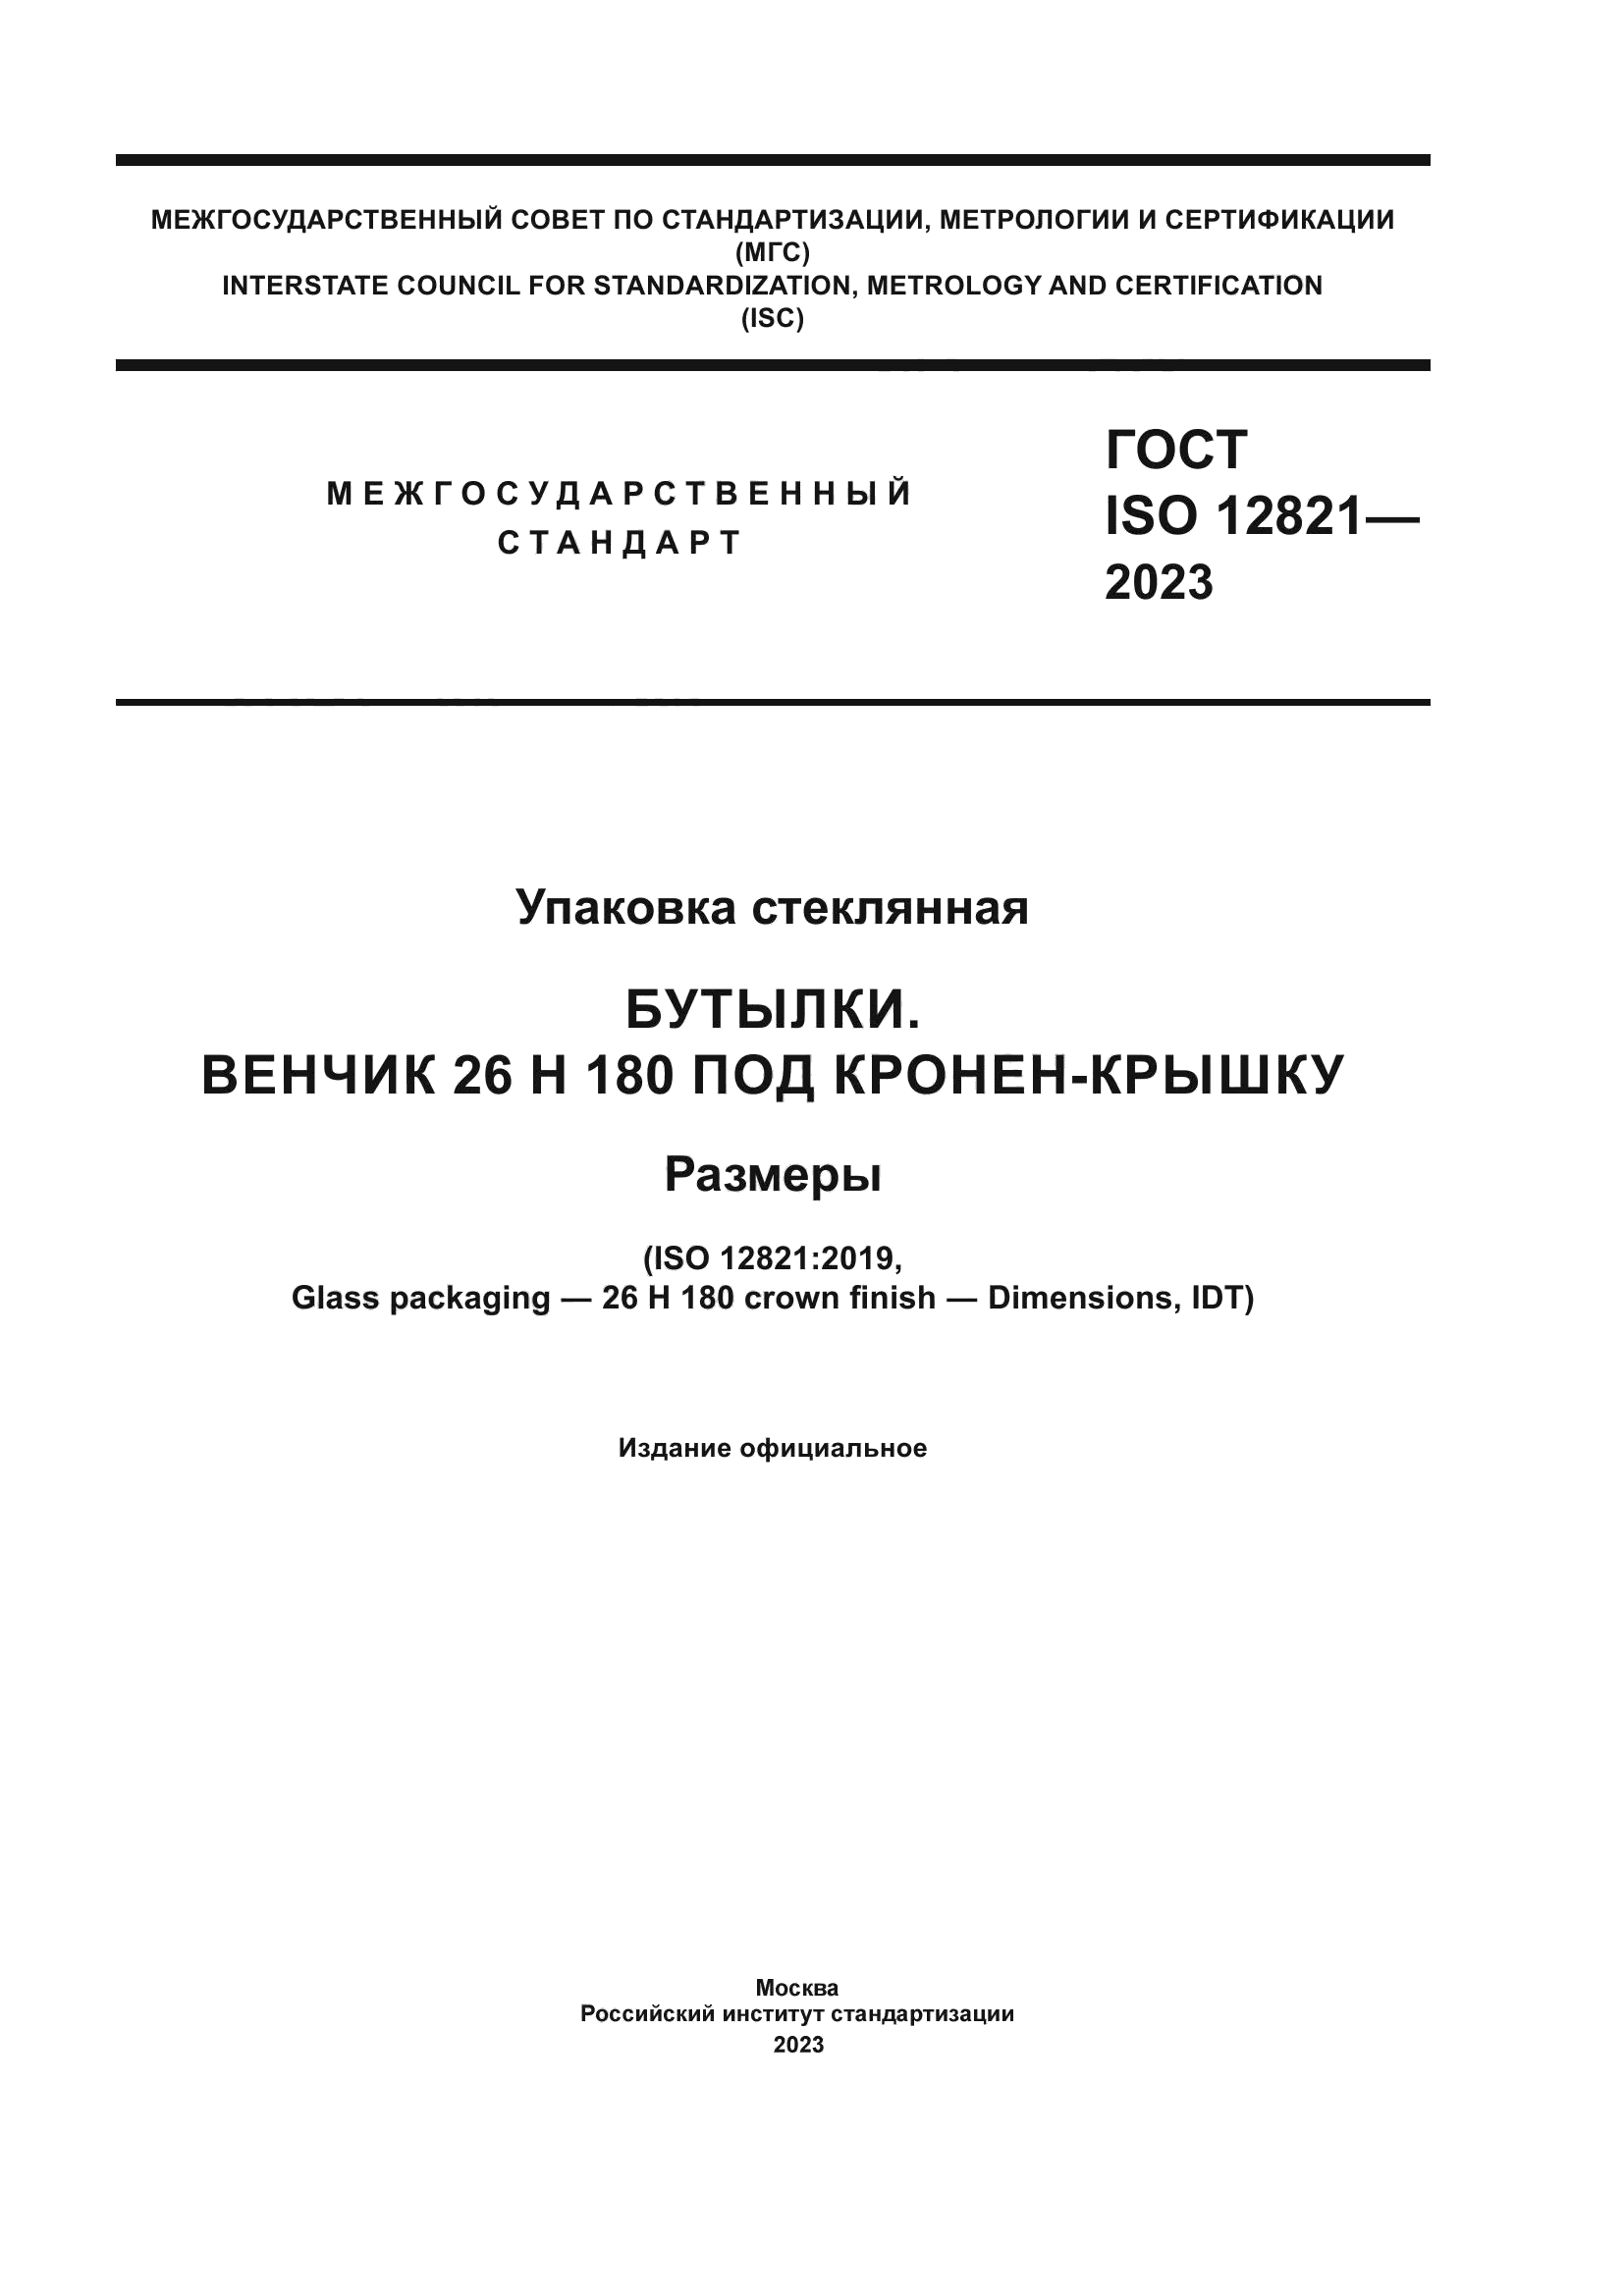 ГОСТ ISO 12821-2023